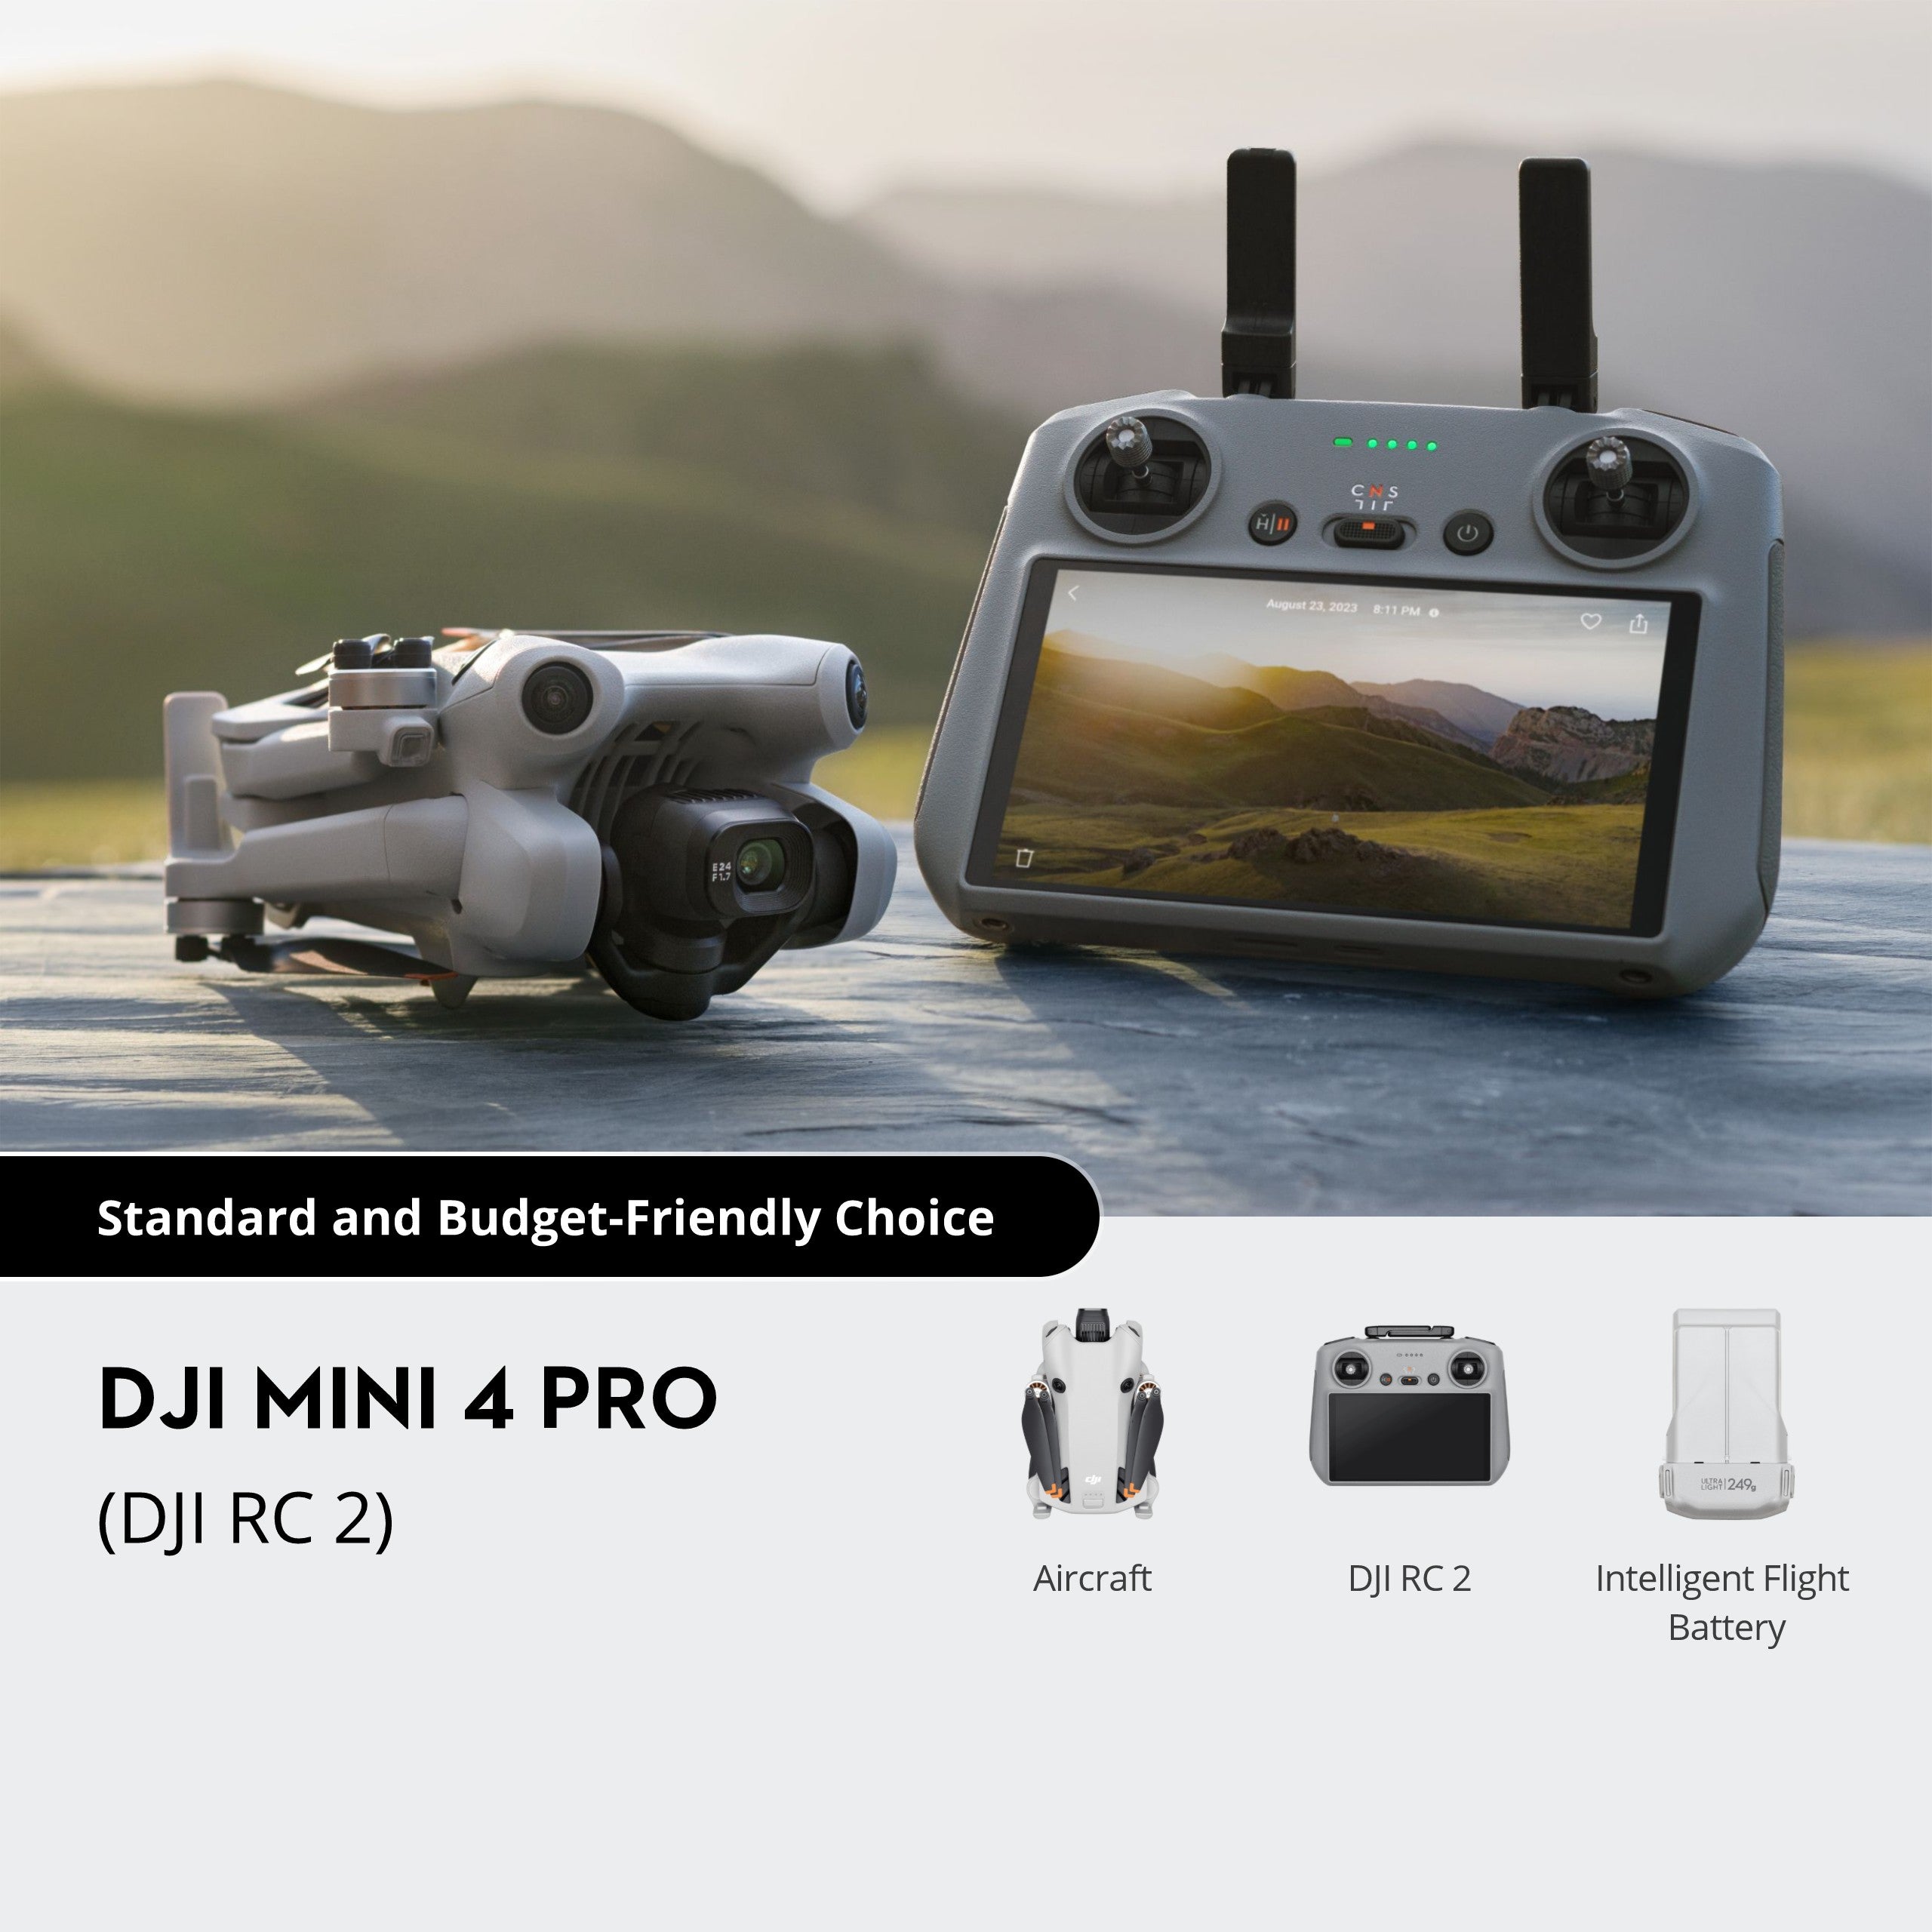 DJI Mini 4 Pro (DJI RC-N2)